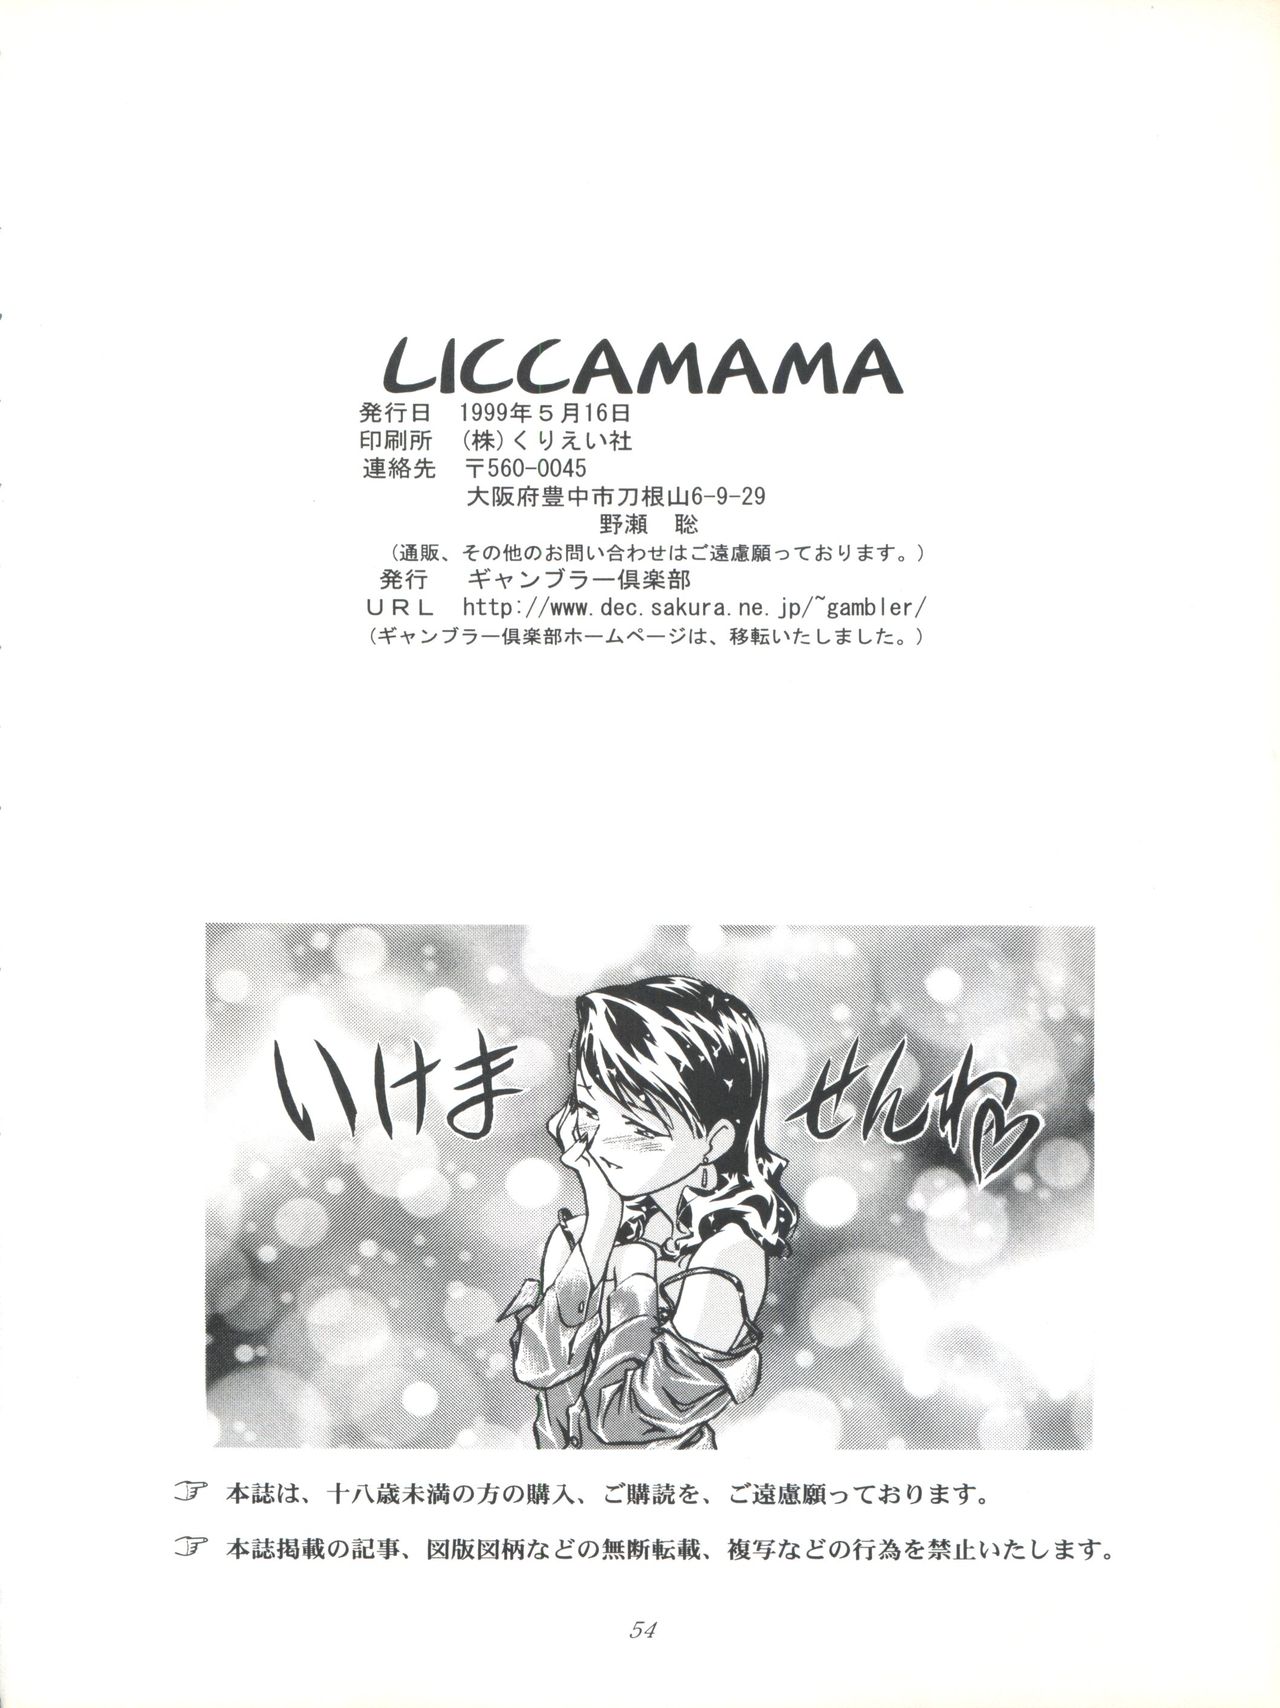 [ギャンブラー倶楽部 (香坂純)] LICCAMAMA (スーパードールリカちゃん)